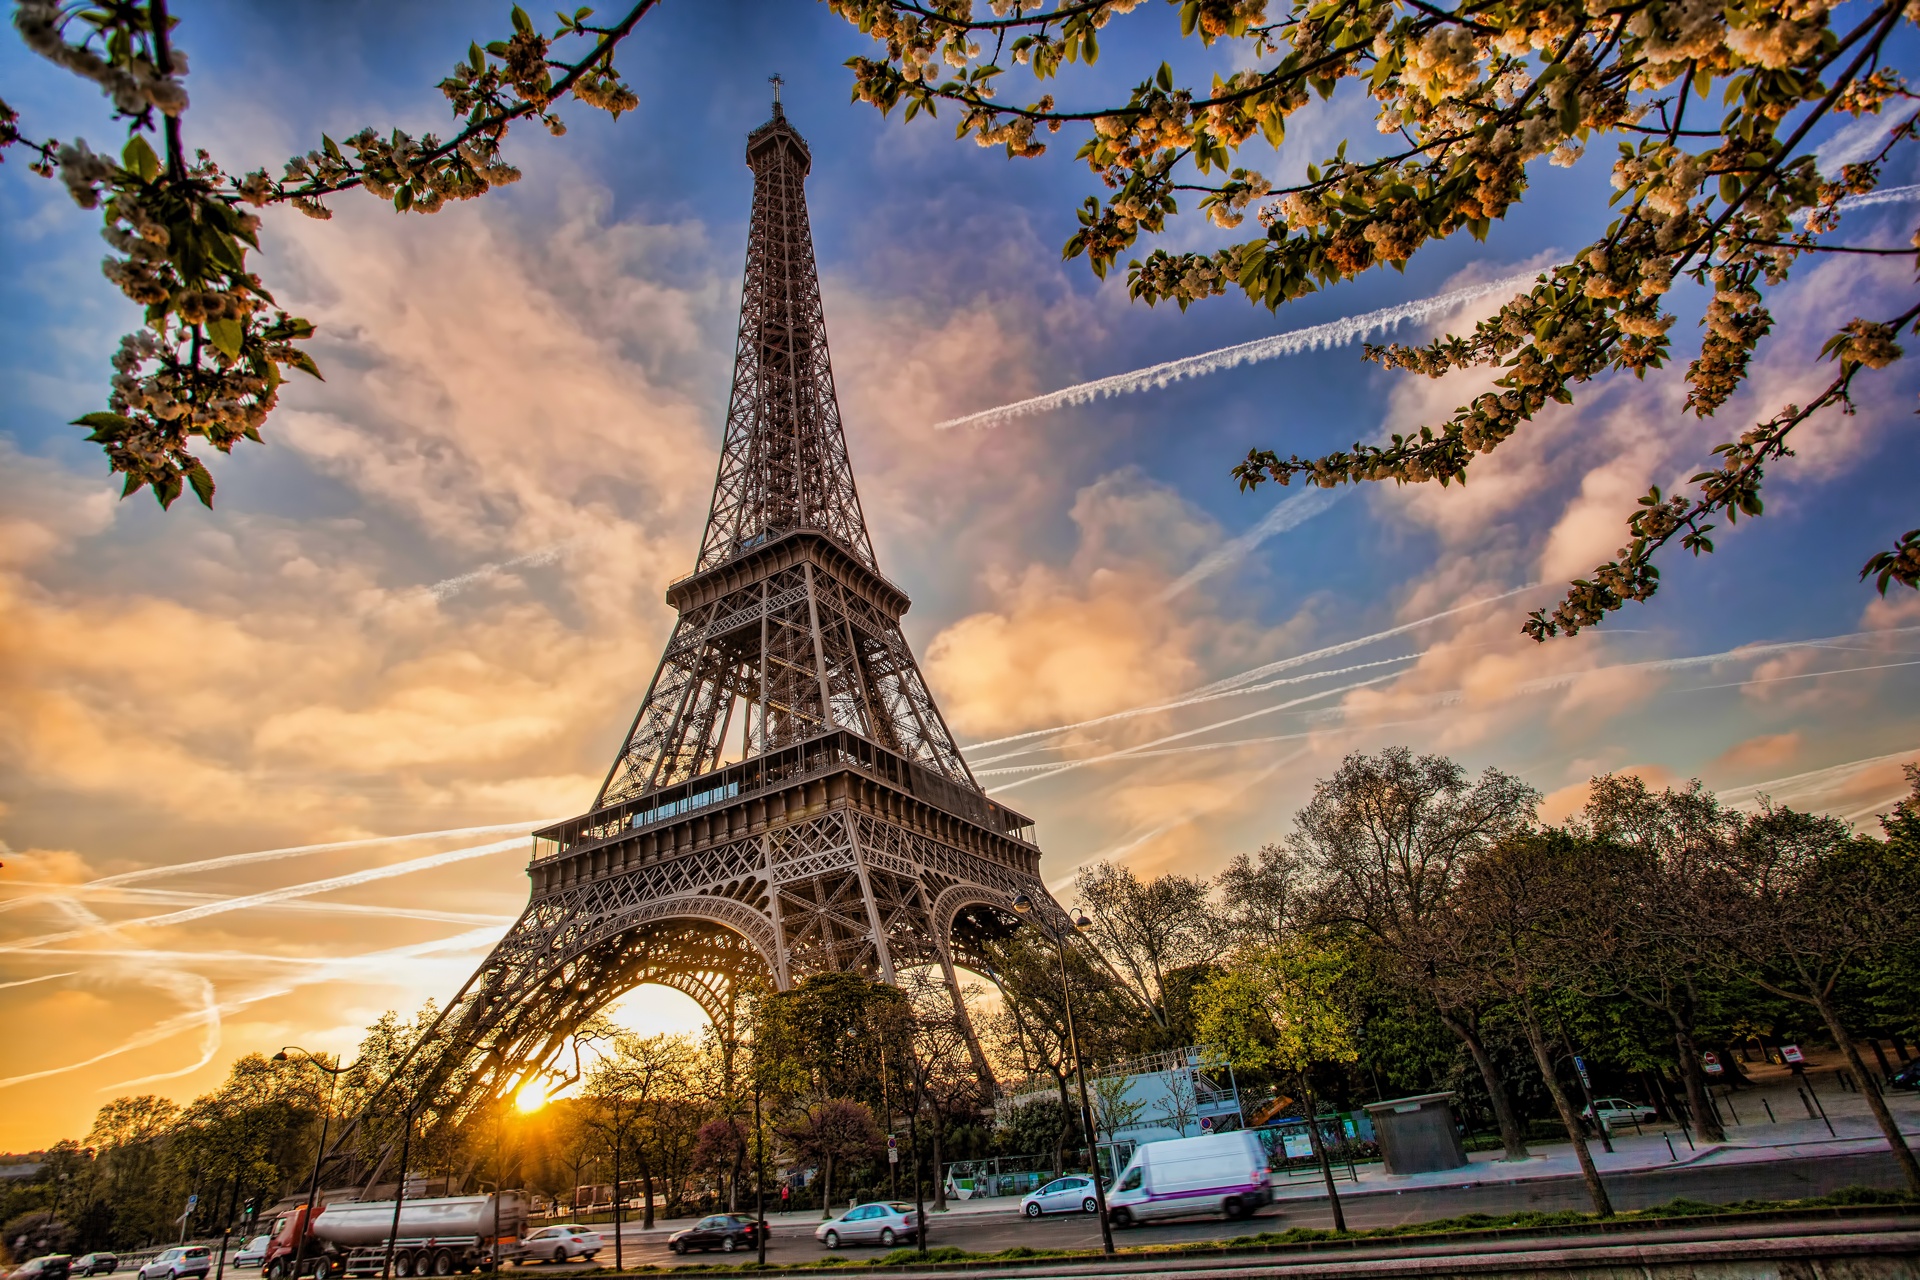 hình ảnh : cây, Bầu trời, Paris, Tượng đài, France, Mùa xuân, Mốc, Tháp  Eiffel, ngay Lê, Ngọn lửa, Tháp chuông, sắc đẹp, vẻ đẹp 2864x4224 - -  1327562 - hình ảnh đẹp - PxHere